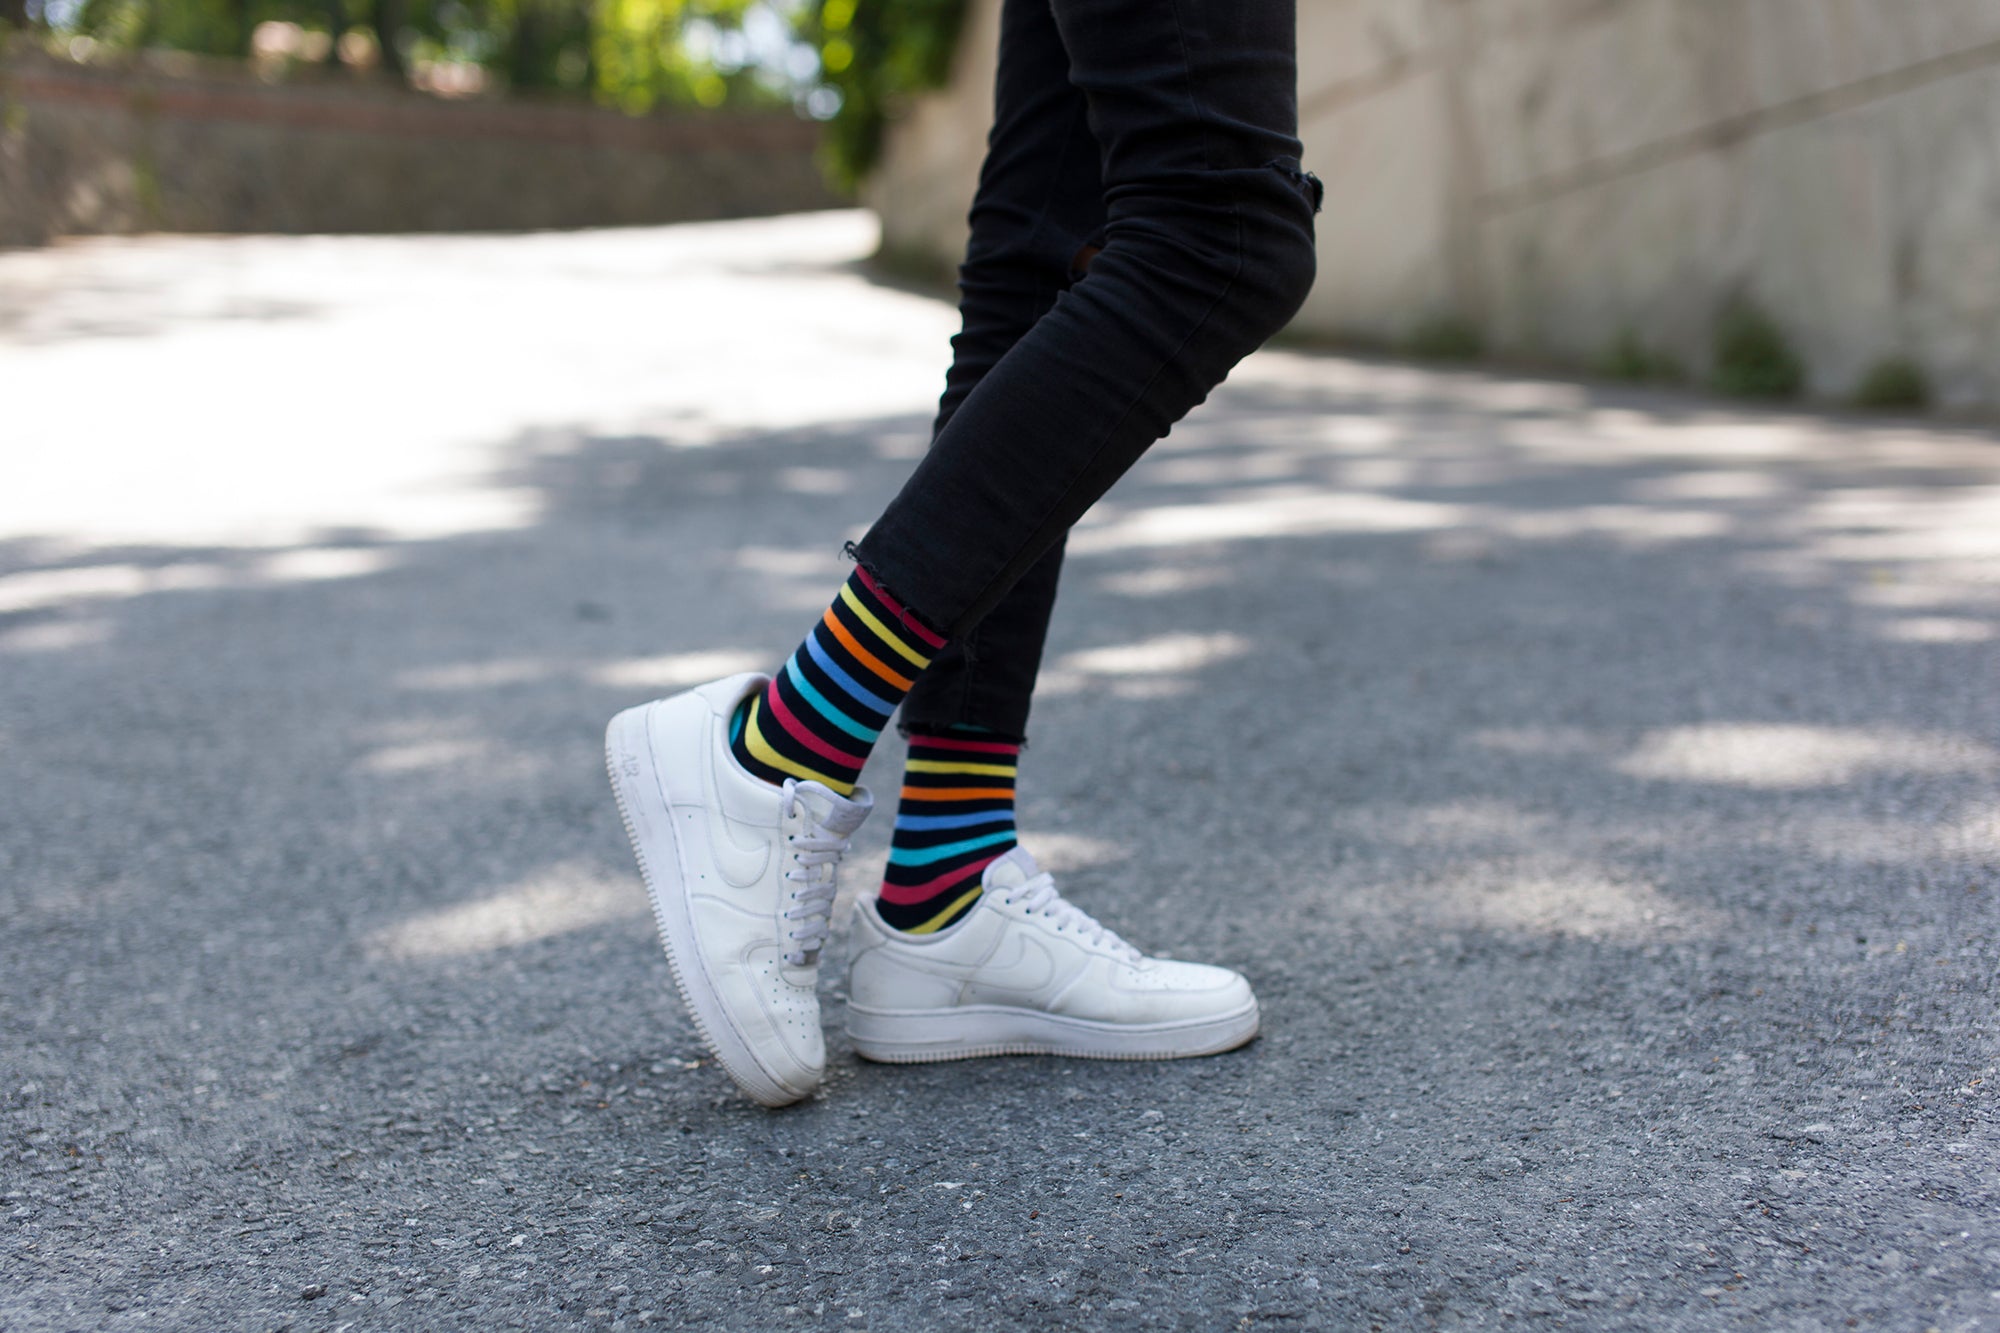 Men's Fashionable Mix Set Socks